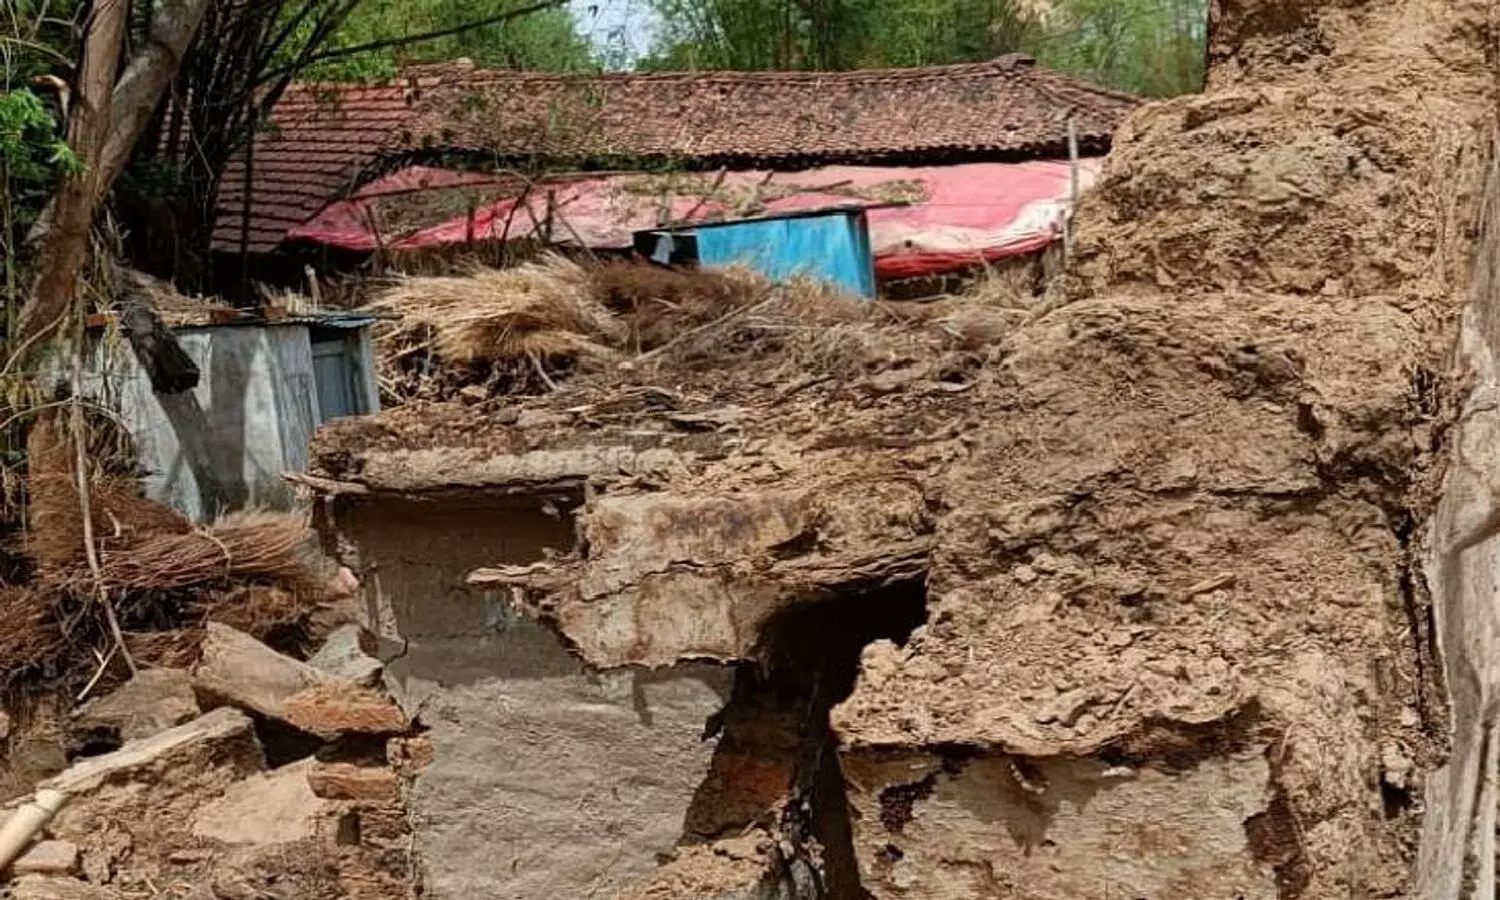 रीवा में 2 घरों की दीवार गिरने से दो लोगों की मौत! जानें पूरा मामला